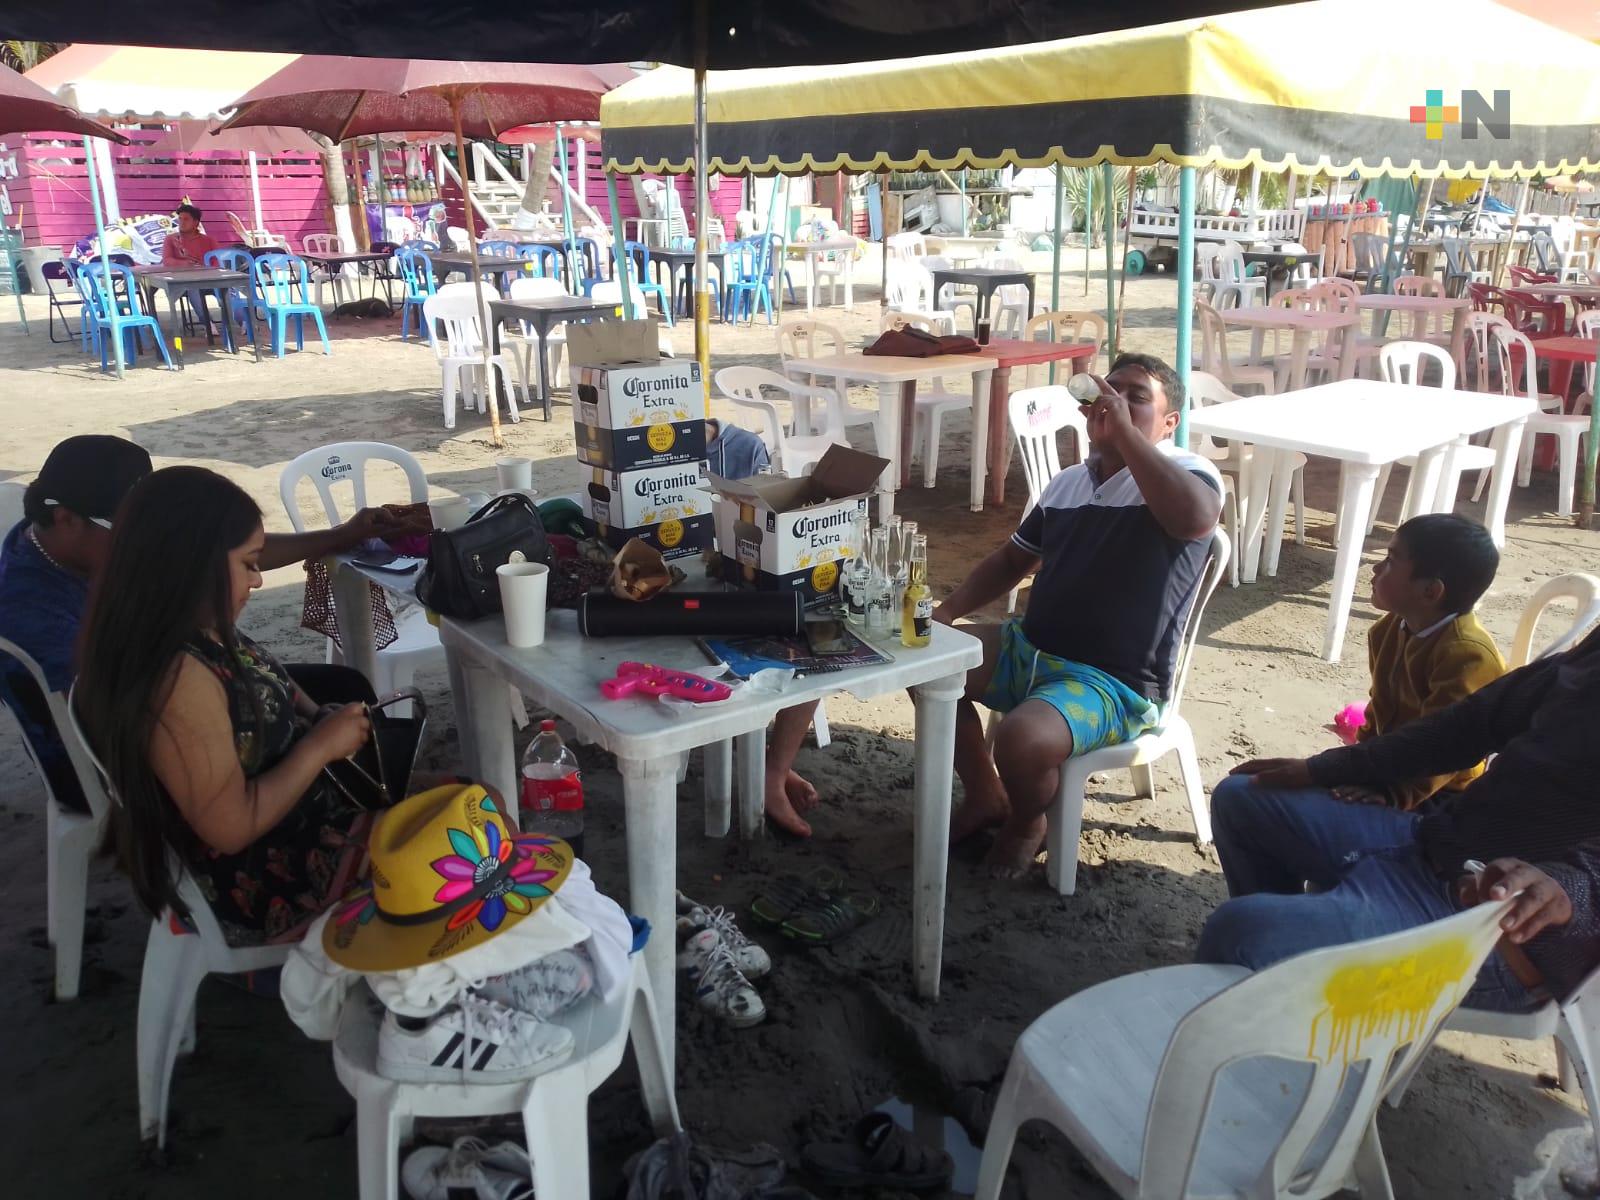 Altos costos en alimentos y bebidas en playa Villa del Mar de Veracruz, confirman turistas